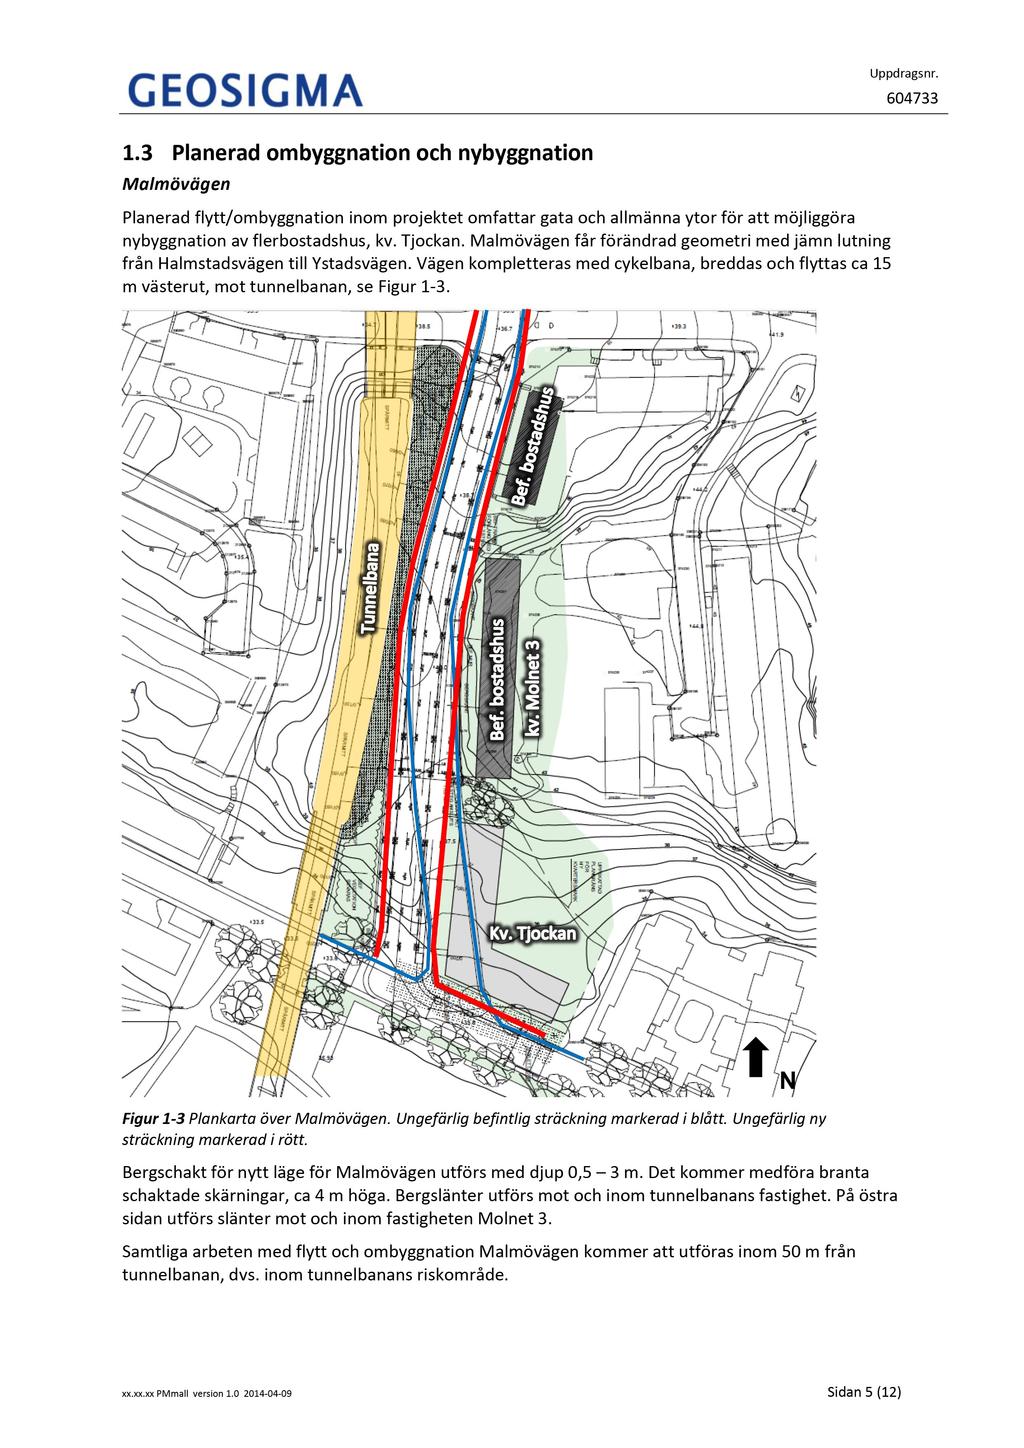 1.3 Planeradombyggnationoch nybyggnation Malmövägen Planeradflytt/ ombyggnationinom projektet omfattar gata och allmännaytor för att möjliggöra nybyggnationav flerbostadshus, kv. Tjockan.